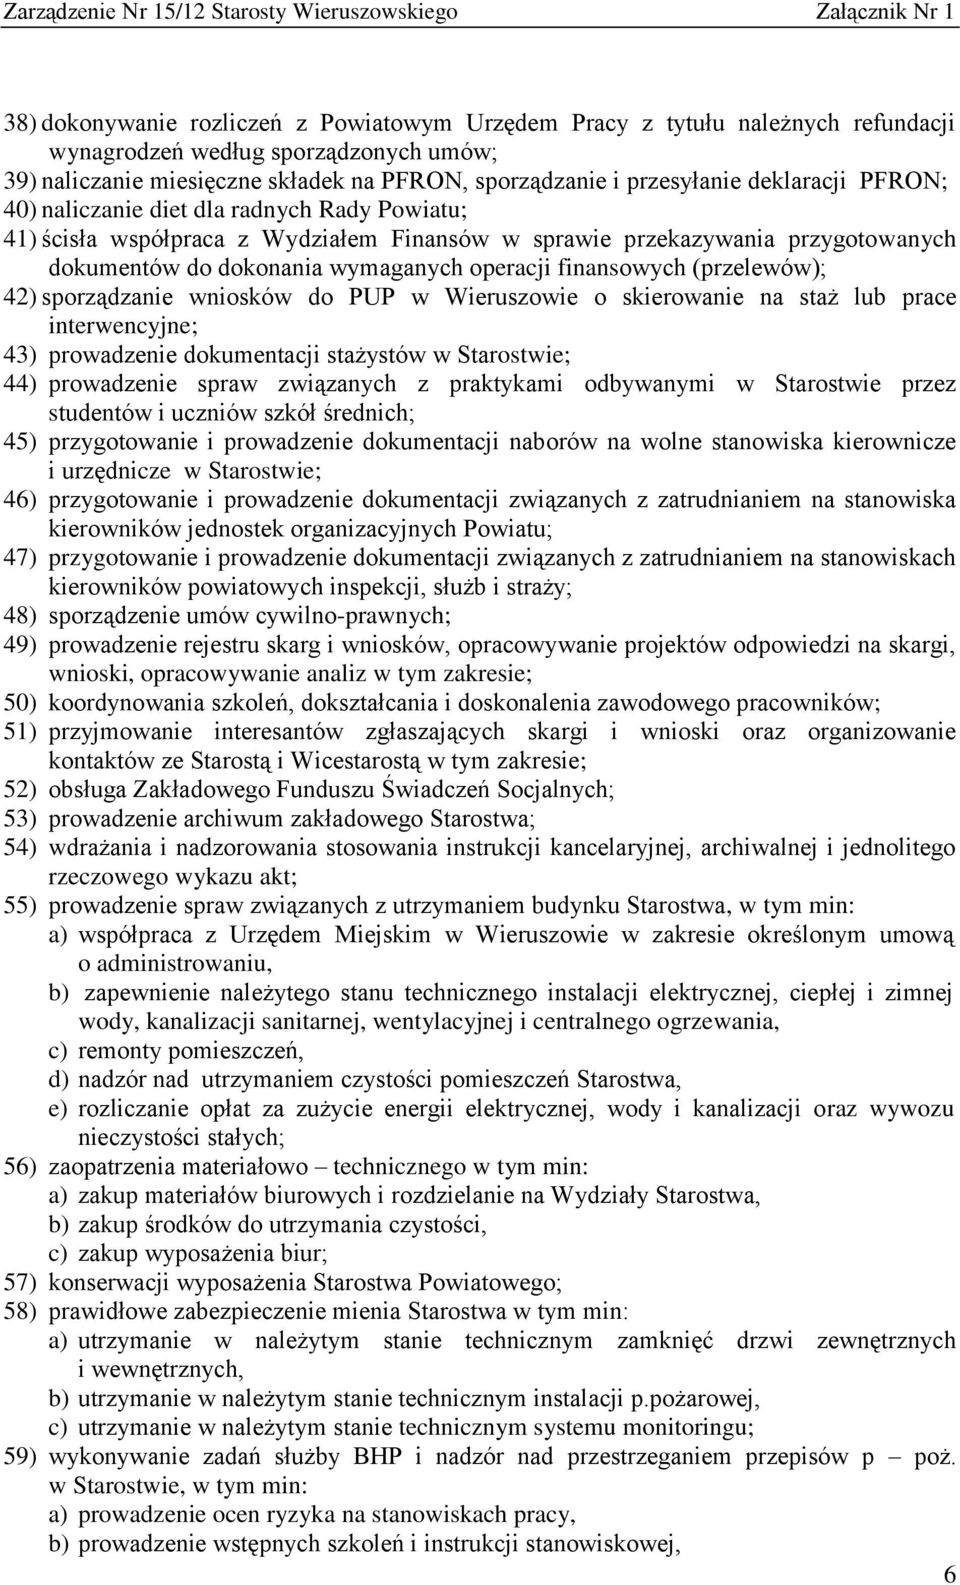 finansowych (przelewów); 42) sporządzanie wniosków do PUP w Wieruszowie o skierowanie na staż lub prace interwencyjne; 43) prowadzenie dokumentacji stażystów w Starostwie; 44) prowadzenie spraw